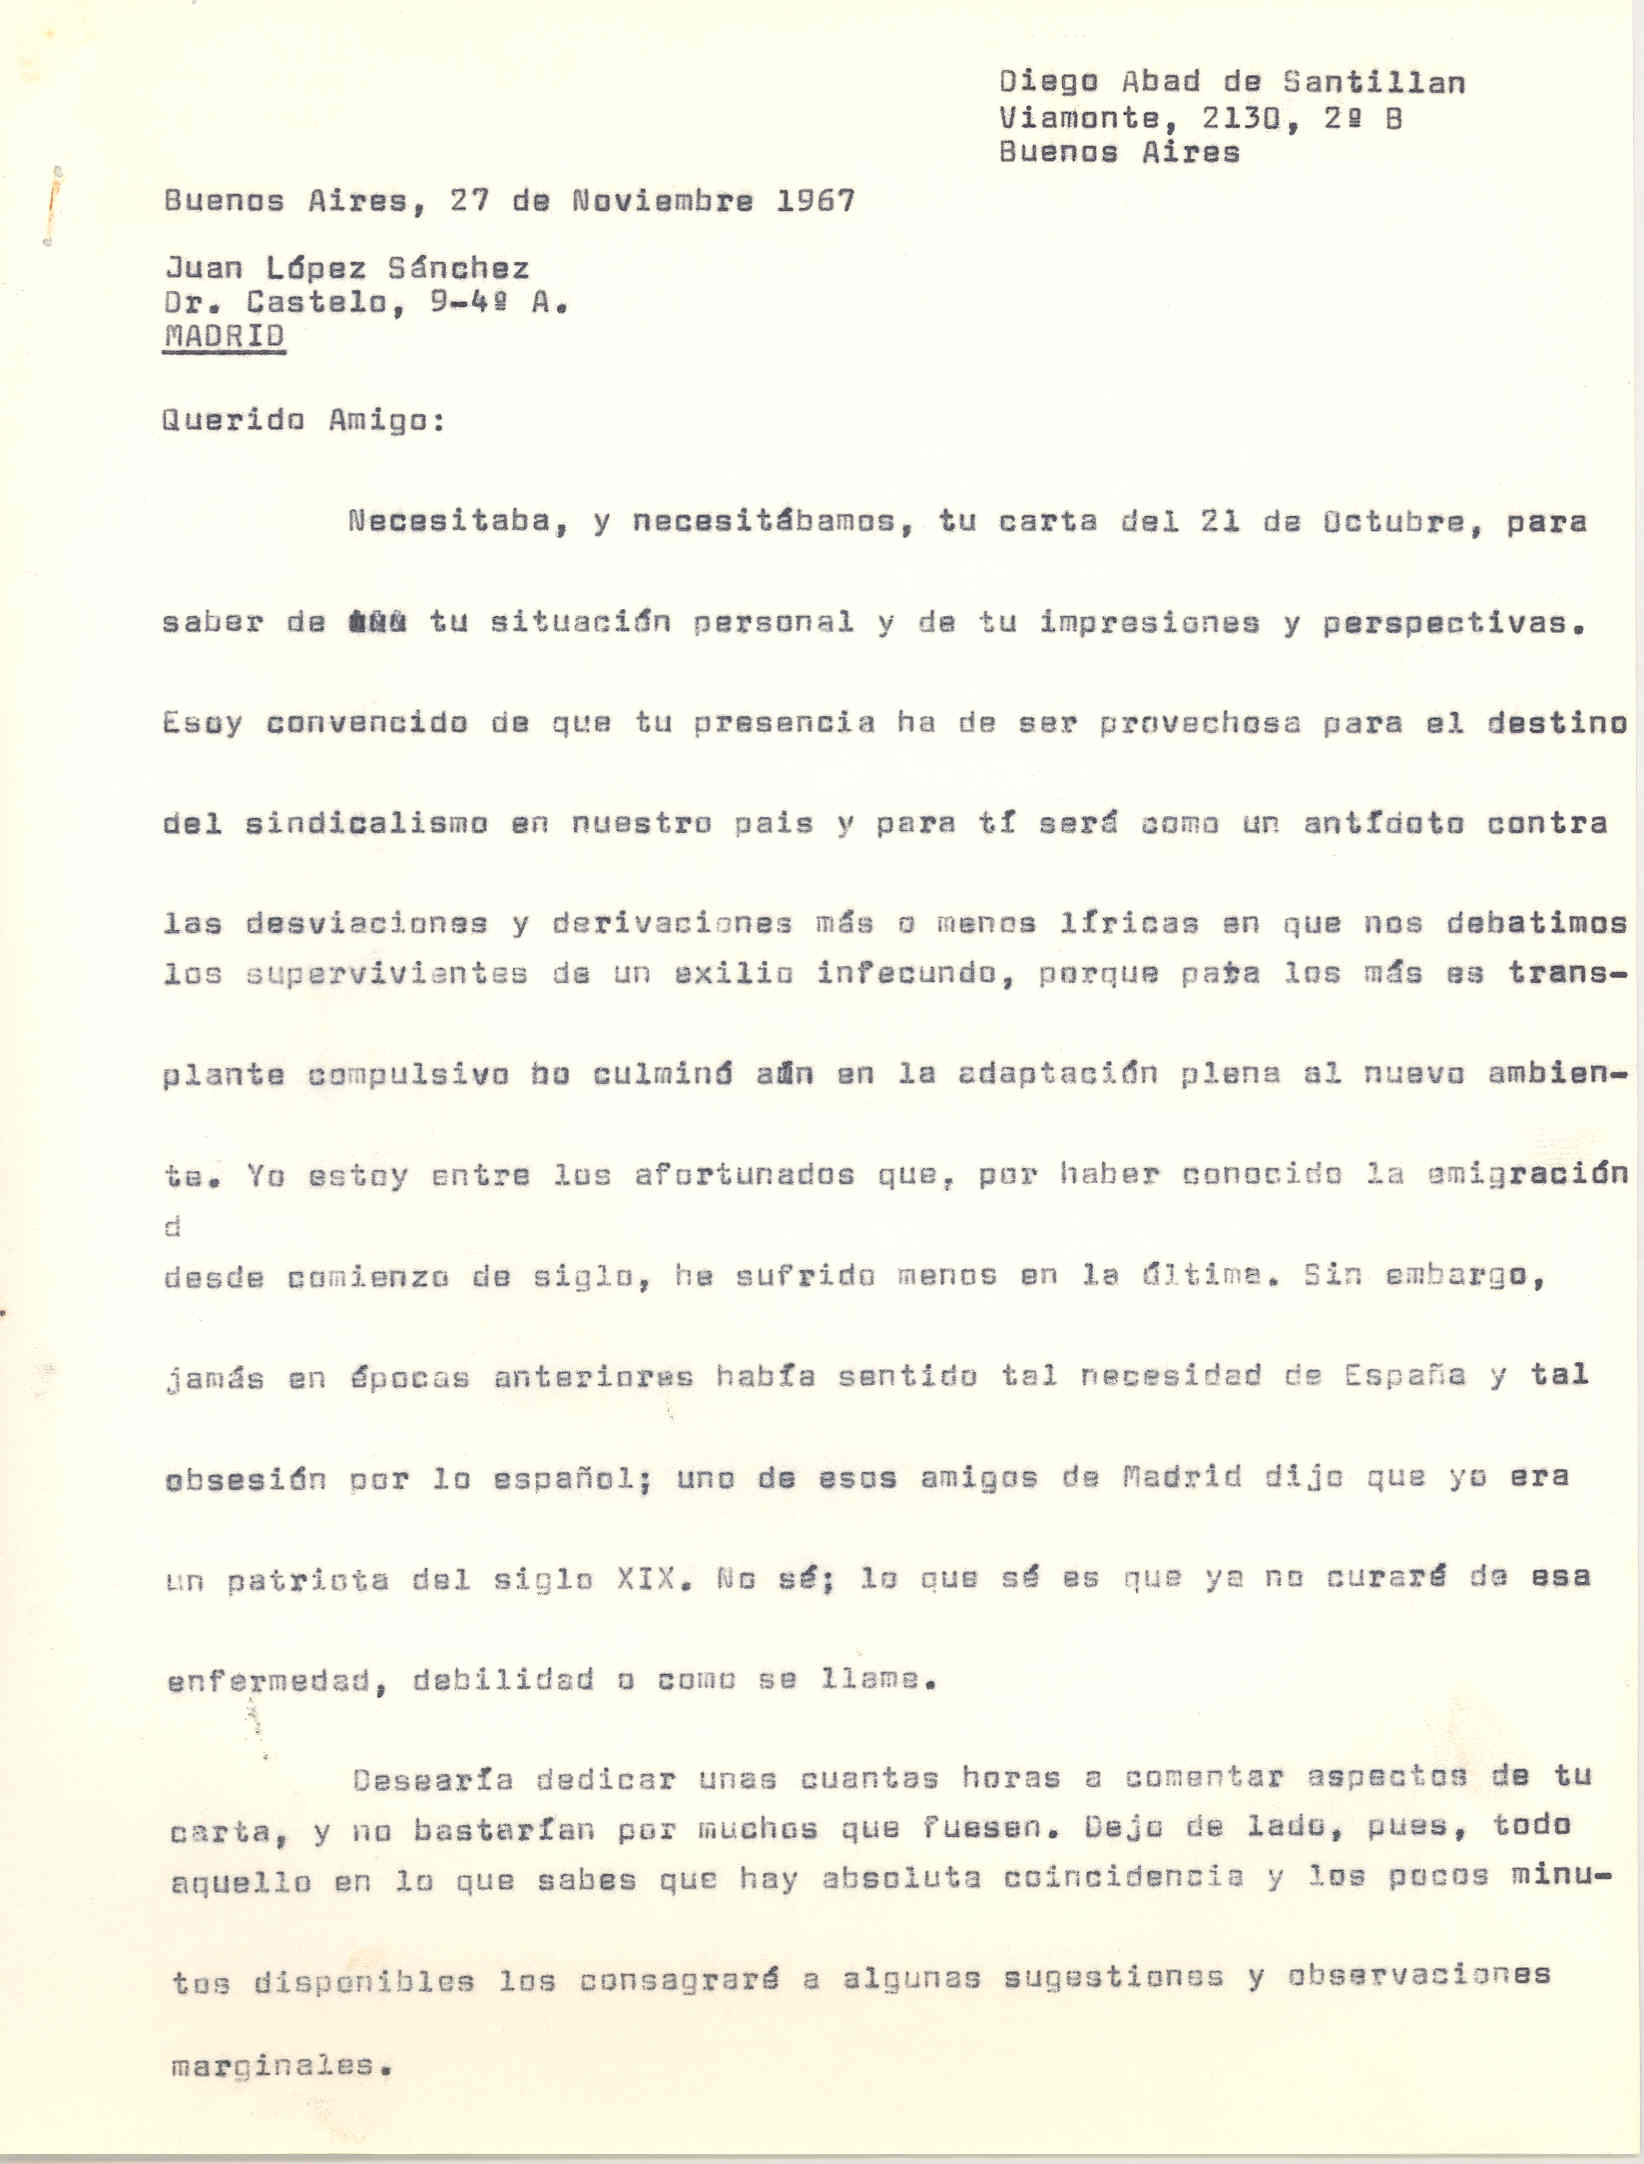 Carta a Diego Abad de Santillán sobre el pasado y presente de España, sobre el sindicalismo, el derecho de asociación de los trabajadores y la unidad sindical.